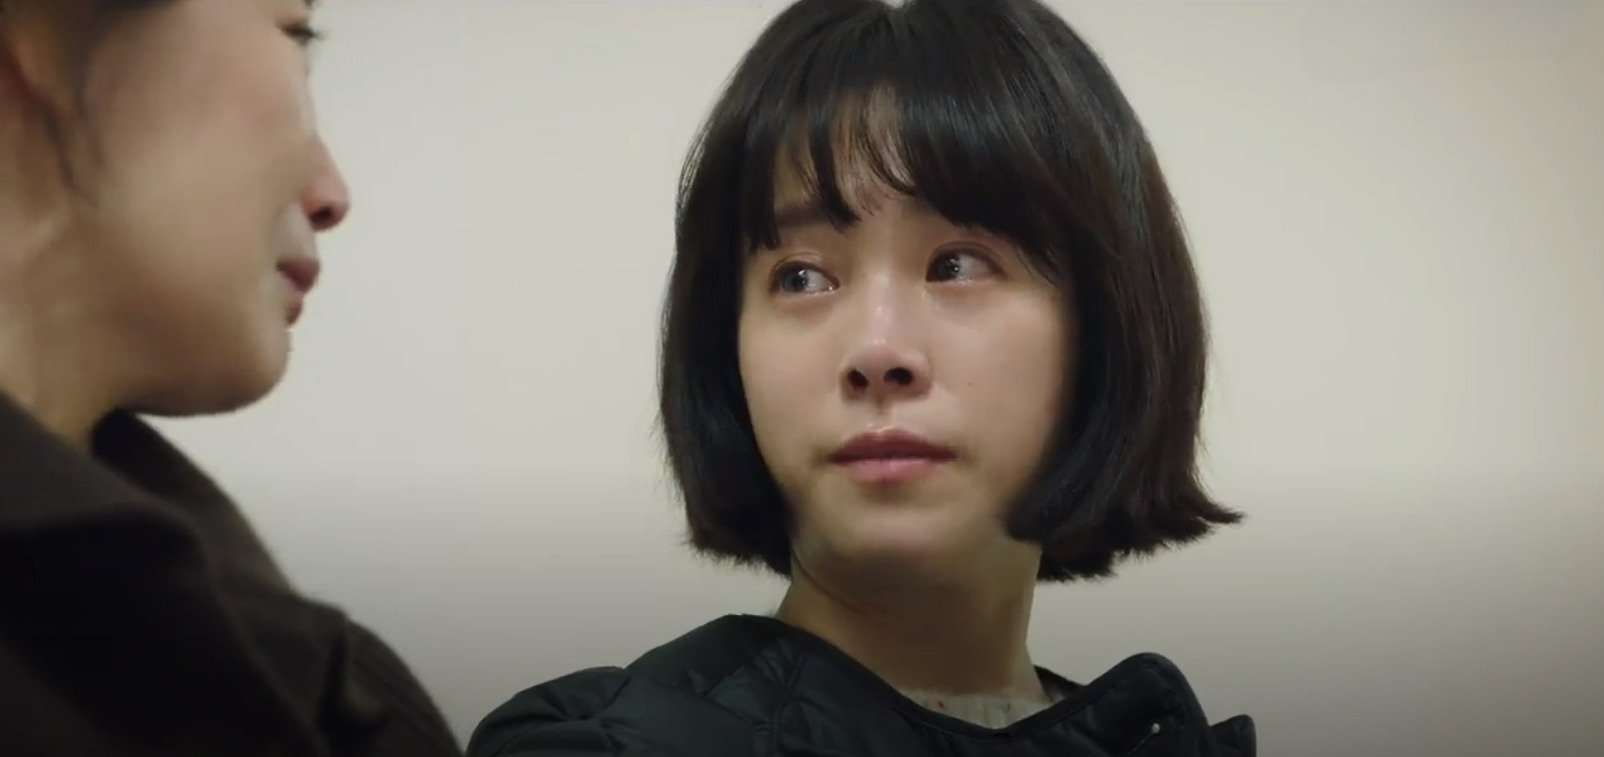 Màn ảnh Hàn đang có một mỹ nhân diễn quá đỉnh: Ánh mắt đau thương làm khán giả nghẹn ngào - Ảnh 2.